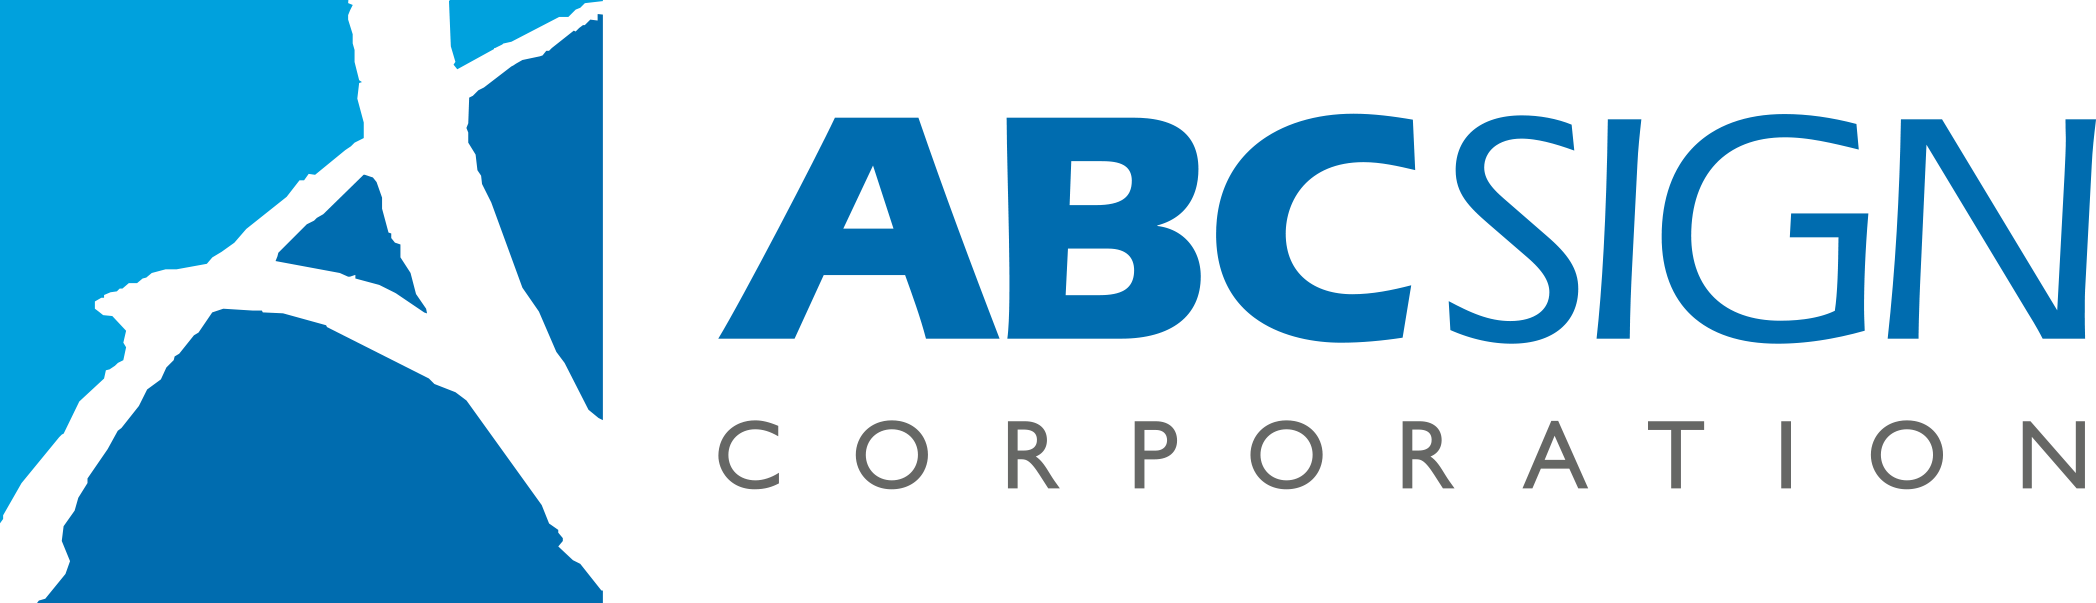 ABC-horizontal-logo